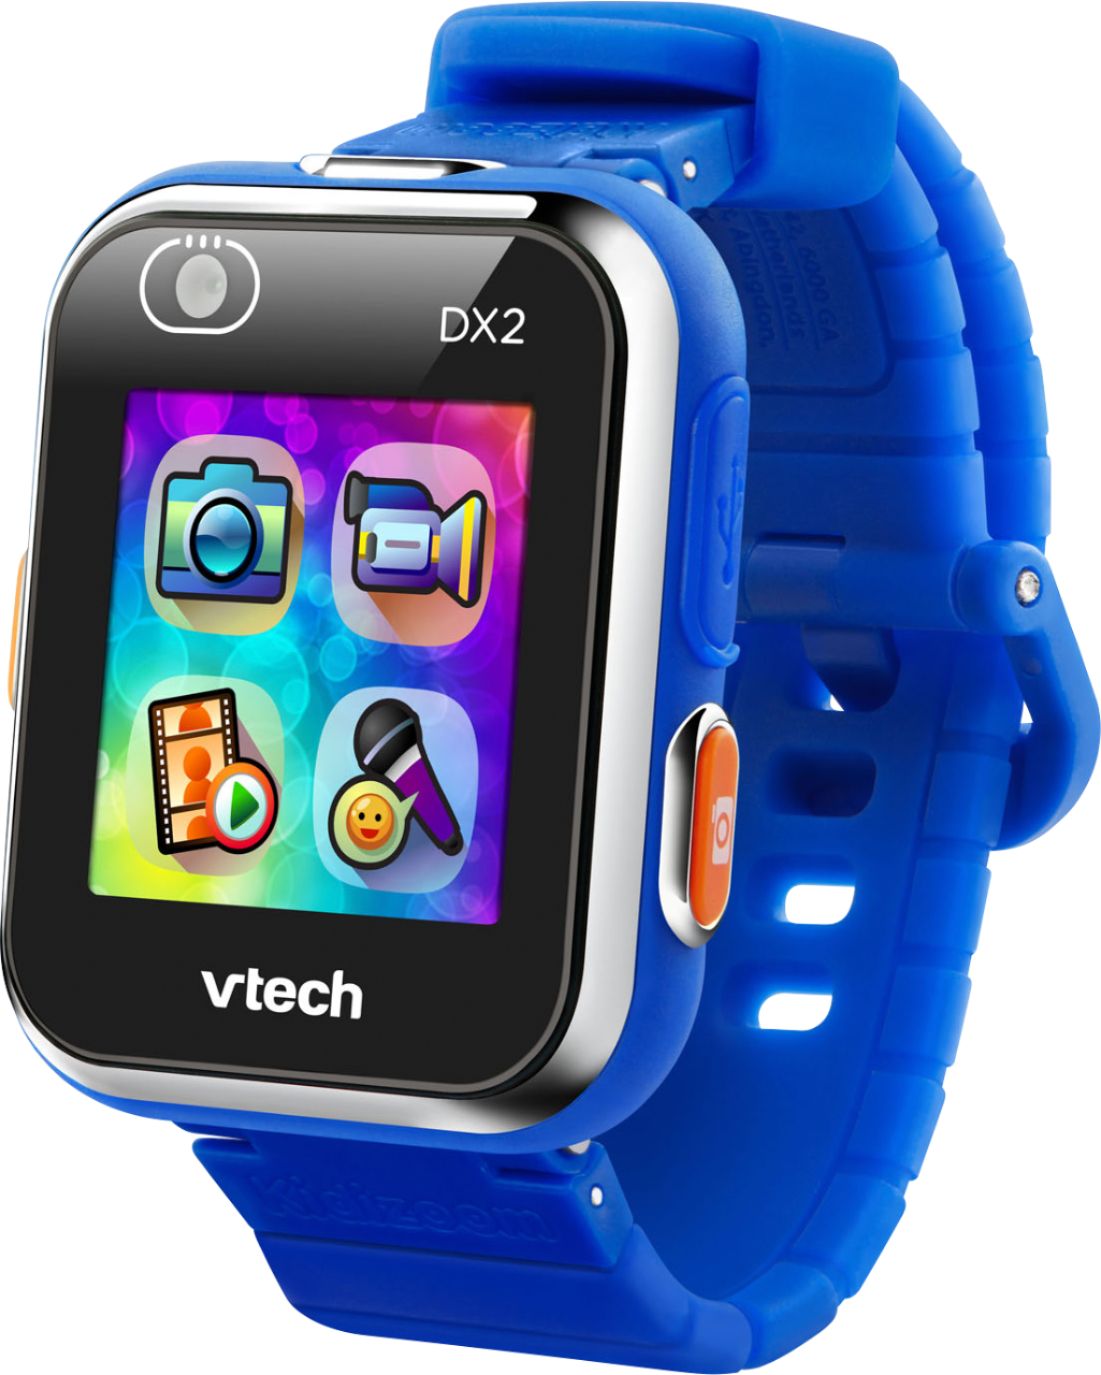 vtech kids smart watch